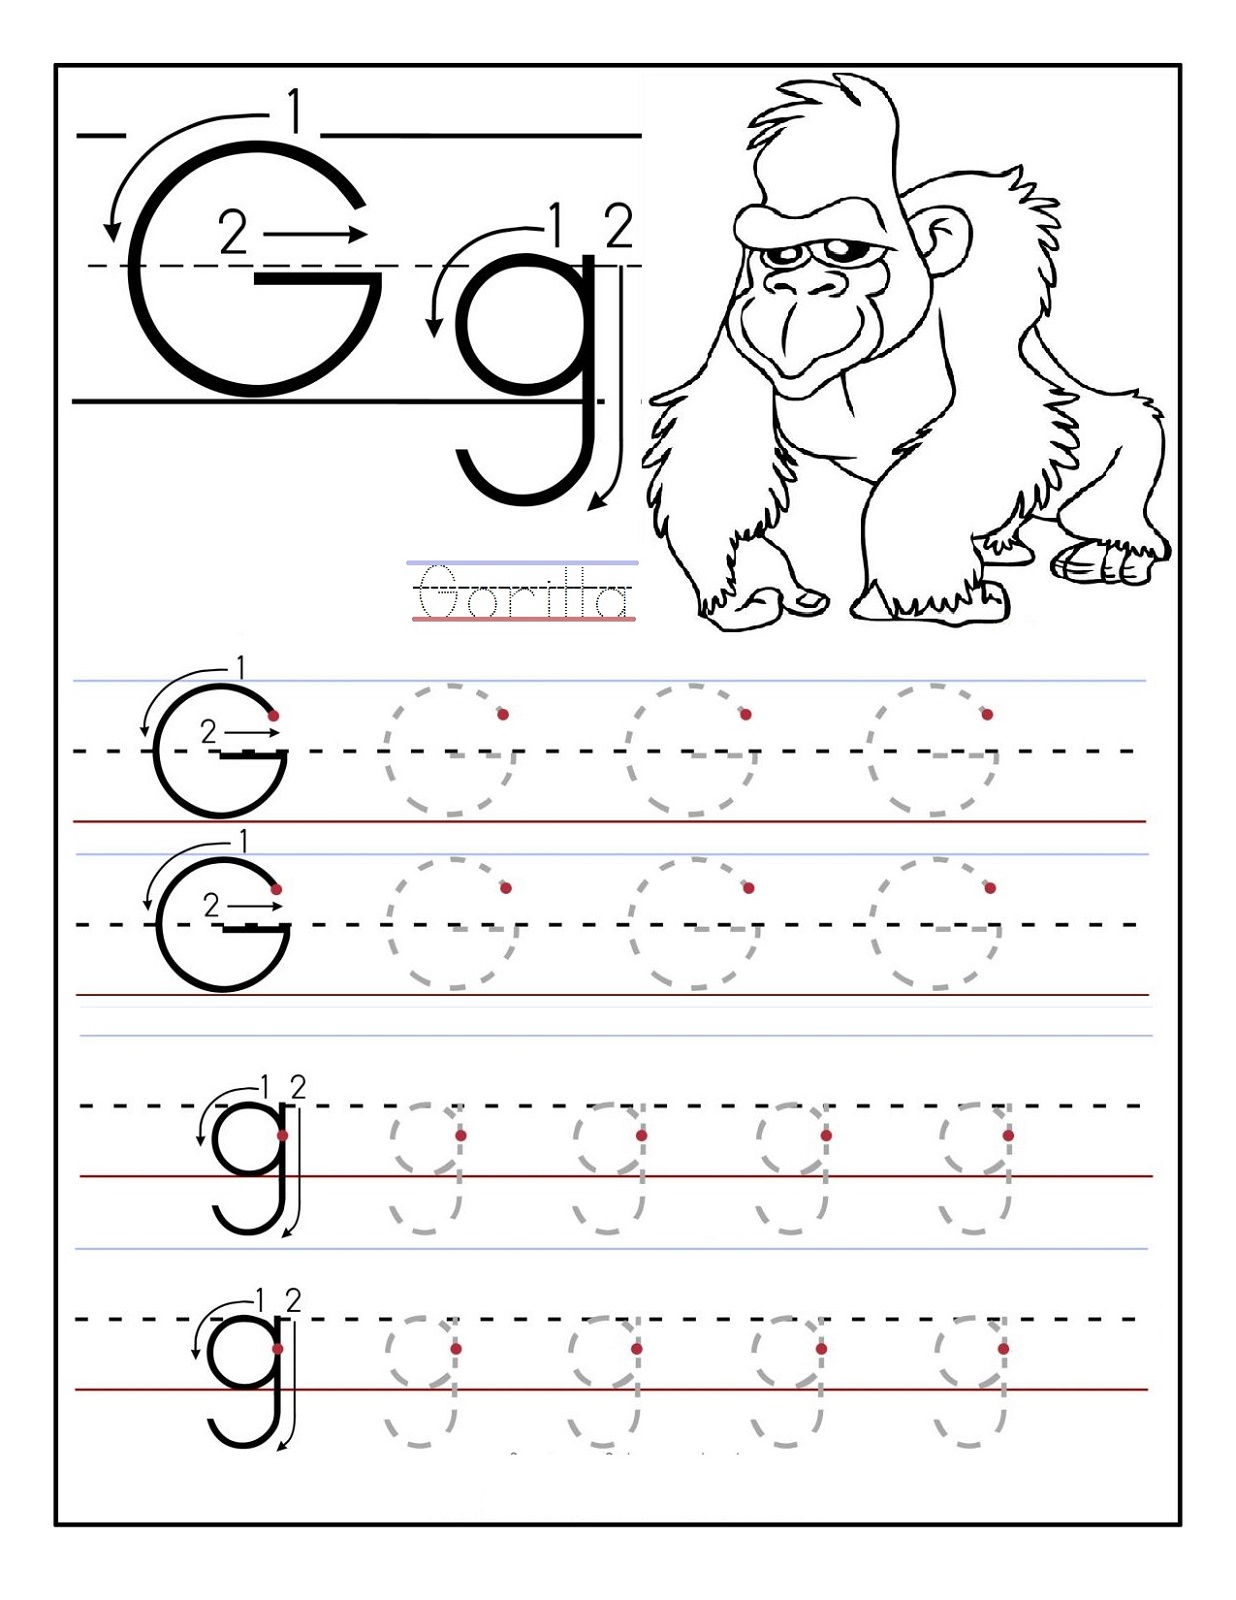 trace the letters gorilla